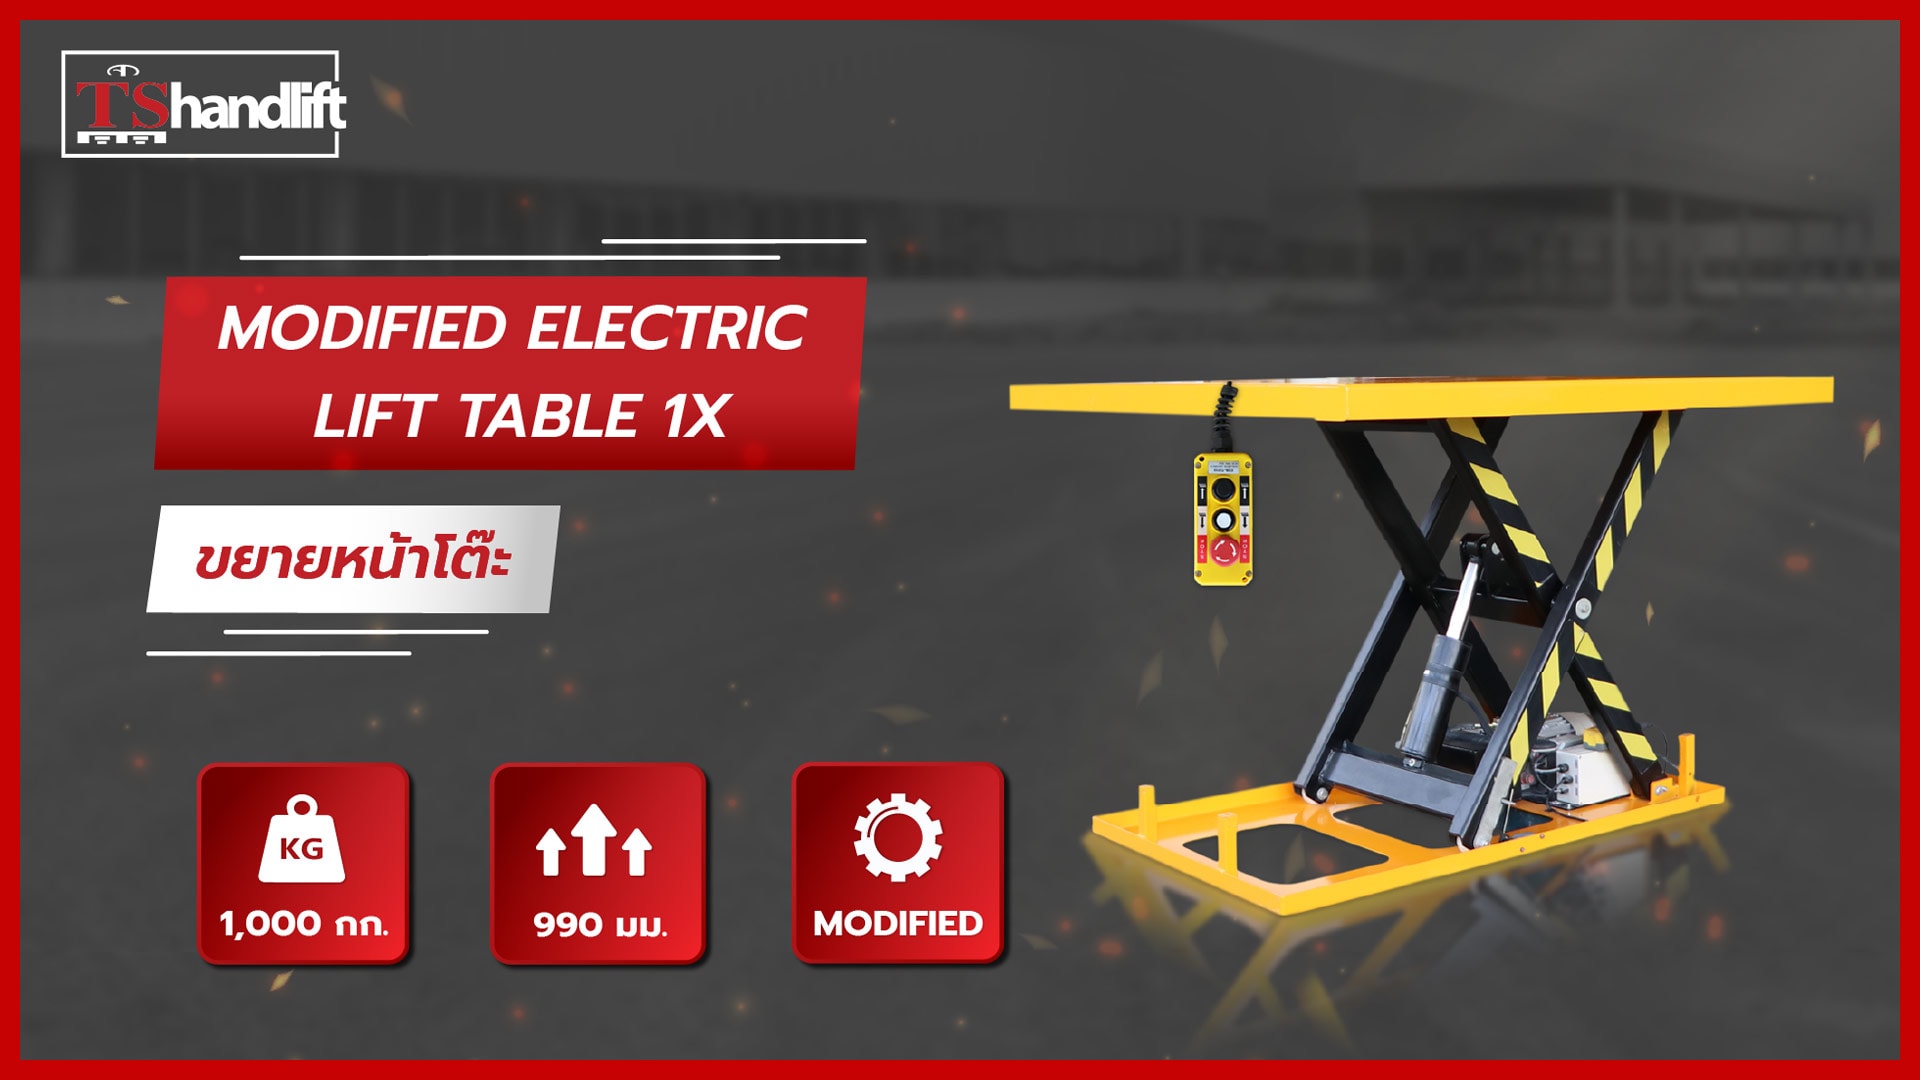 ปกวิดีโอแนะนำ [Modified] Electric Lift Table 1X Enlarge platform